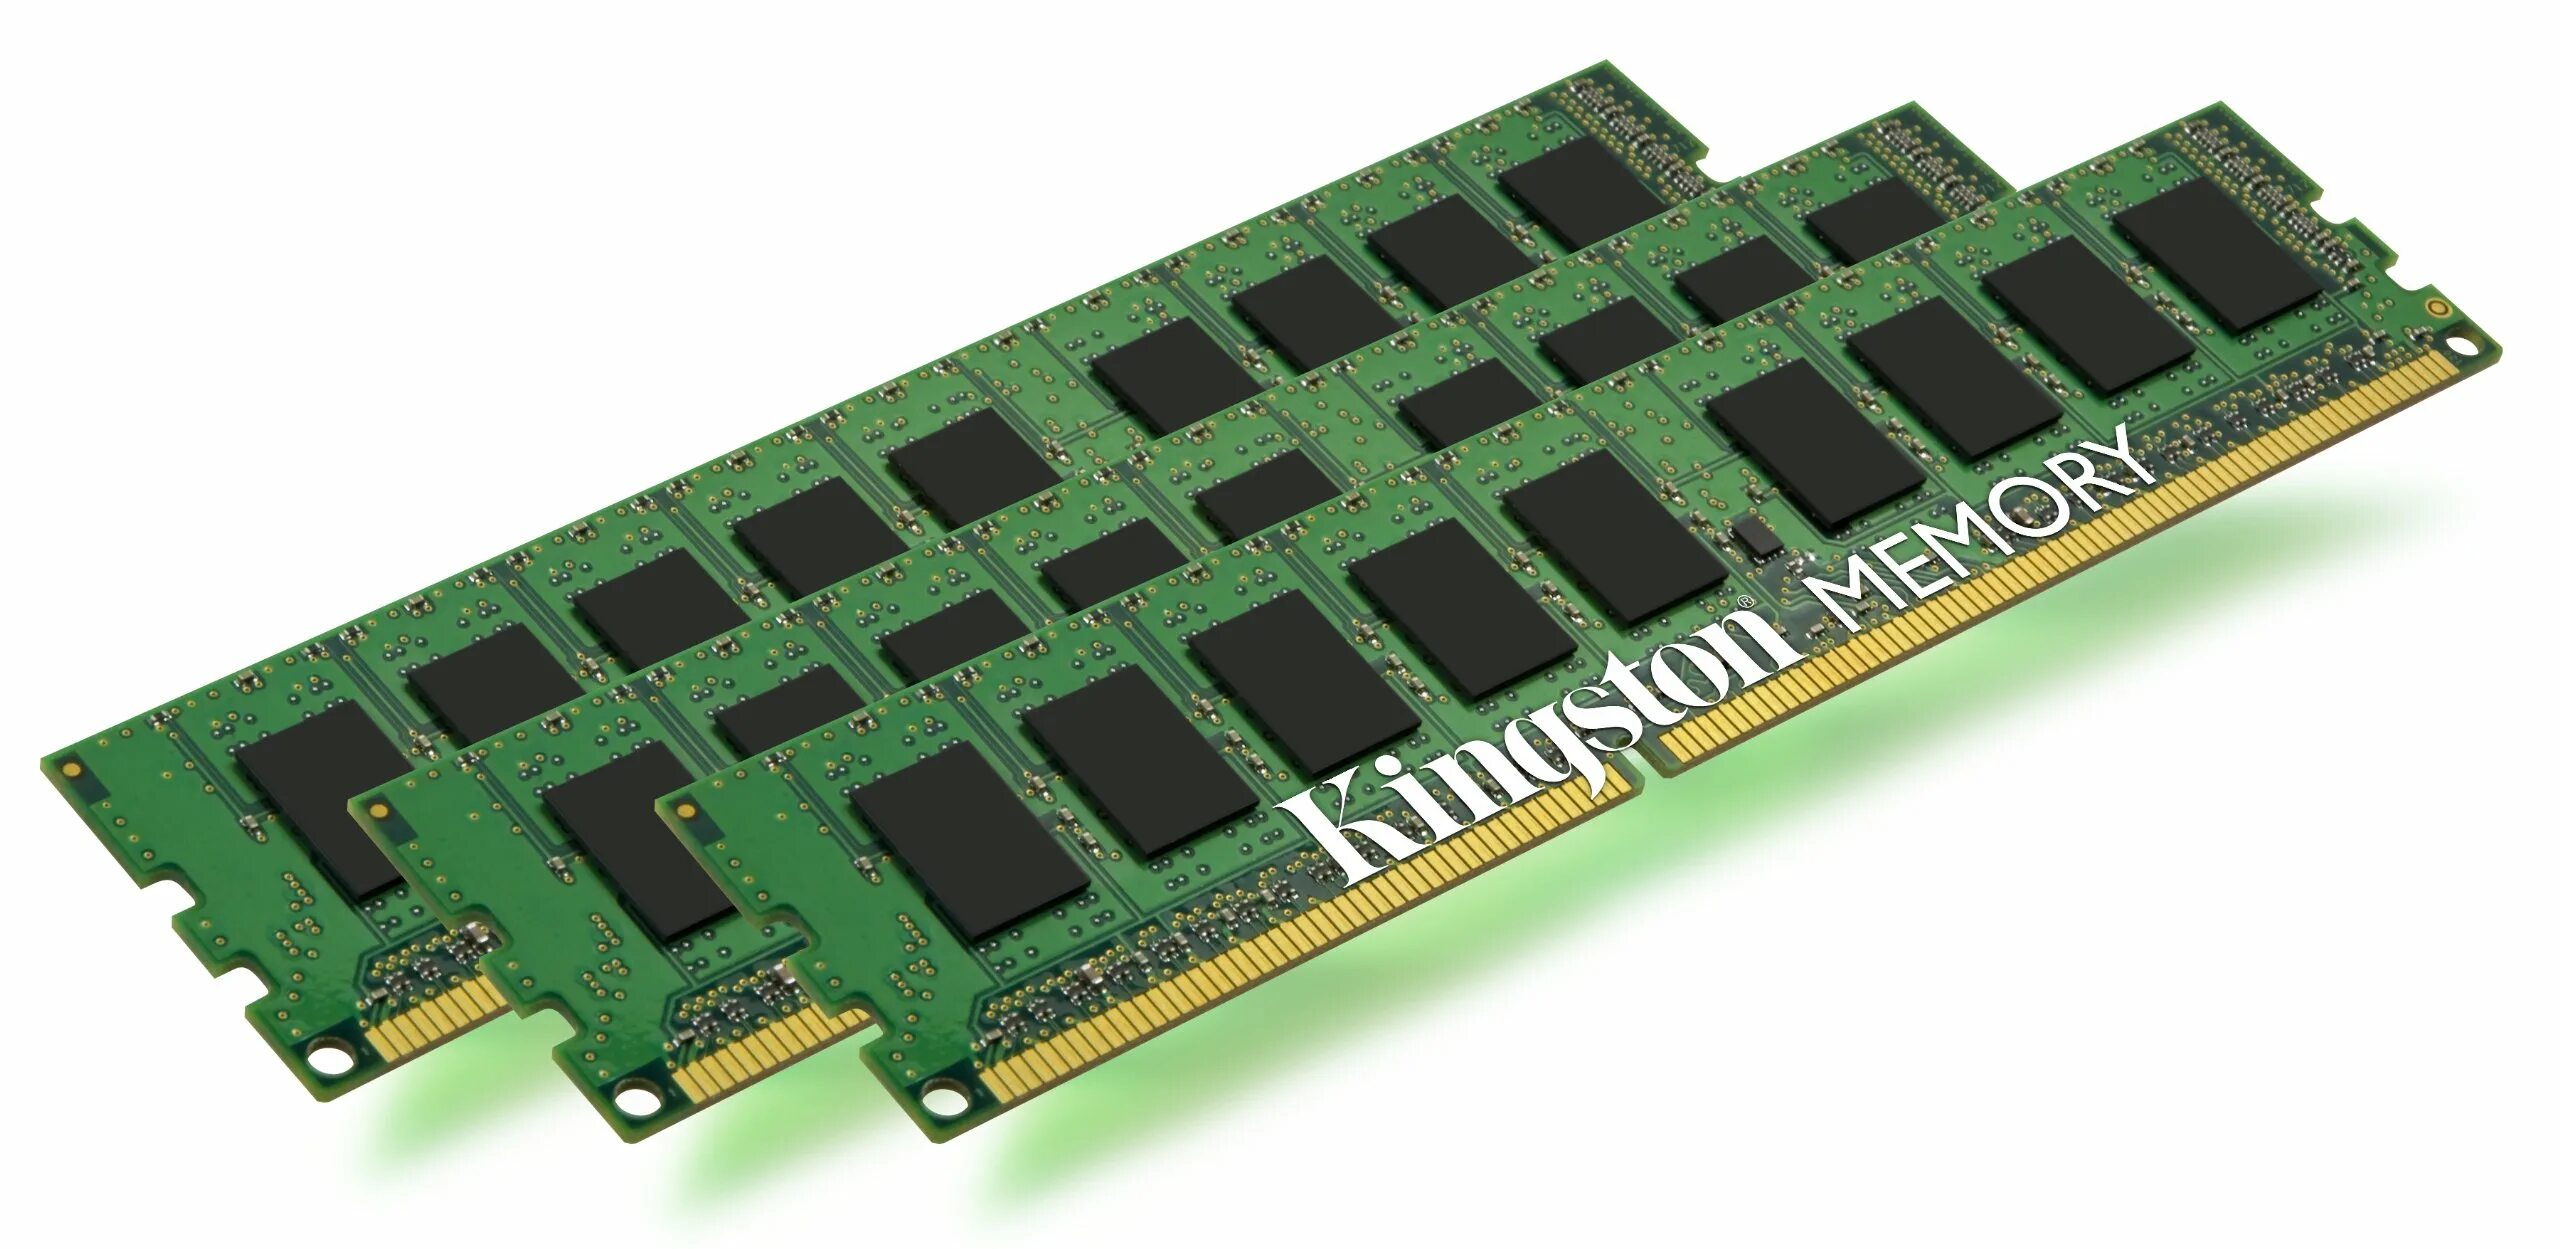 32 gb ram. Оперативная память ddr3 8 GB 1333 MHZ Кингстон. Оперативная память 6 ГБ ддр 3. Оперативная память Кингстон 8 ГБ ddr3. Оперативная память Kingston ddr3 4gb 1333mhz.